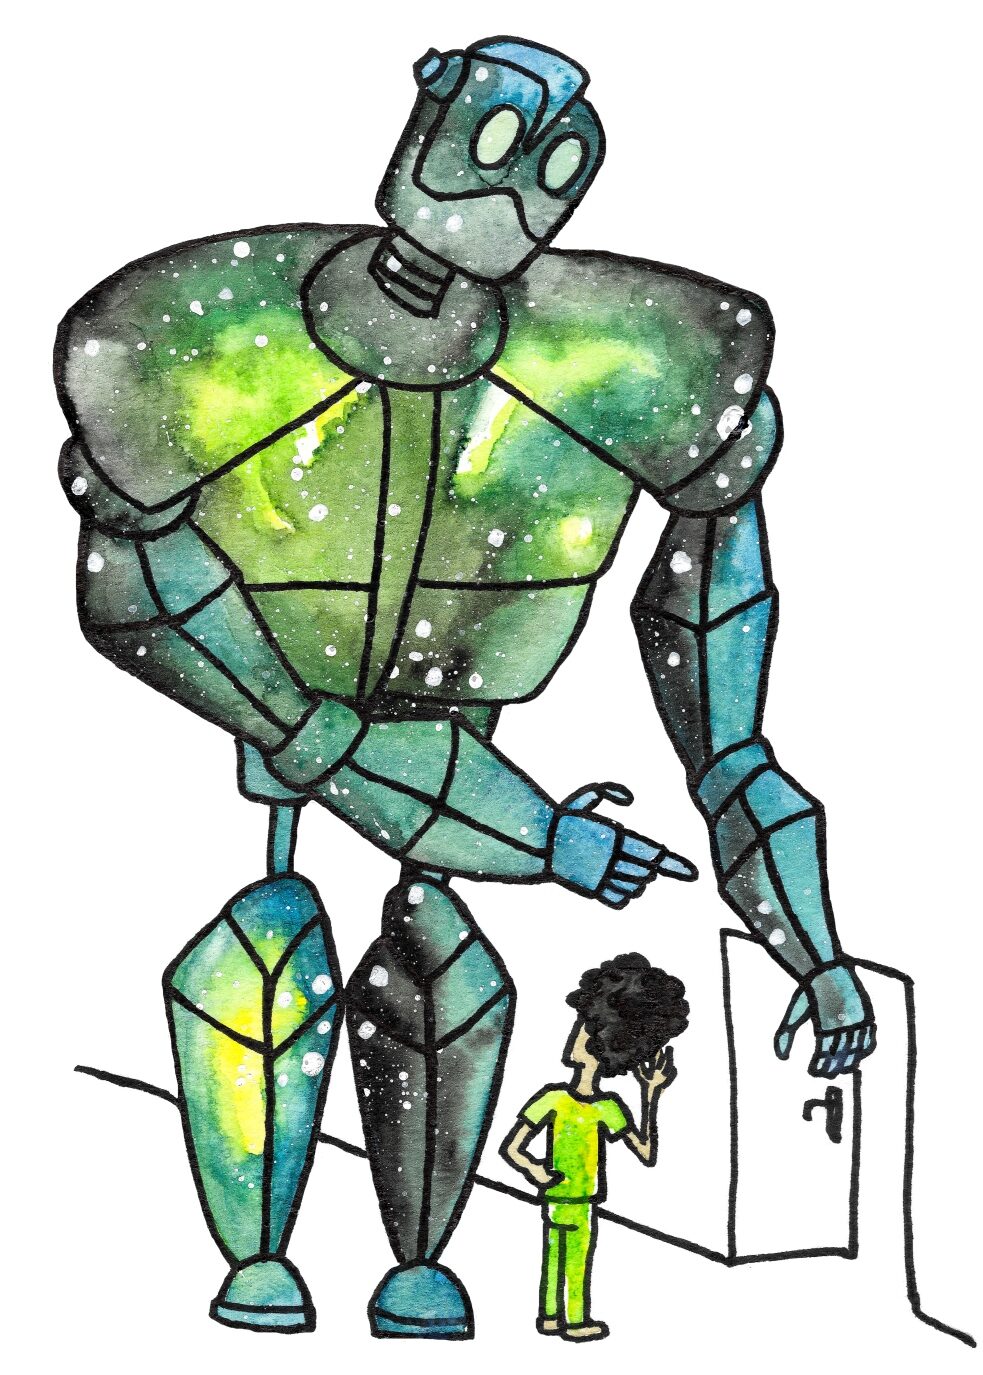 Aquarellbild eines übergroßen Roboters in den Farben Grün und Blau, der einen Jungen auf eine offene Tür verweist